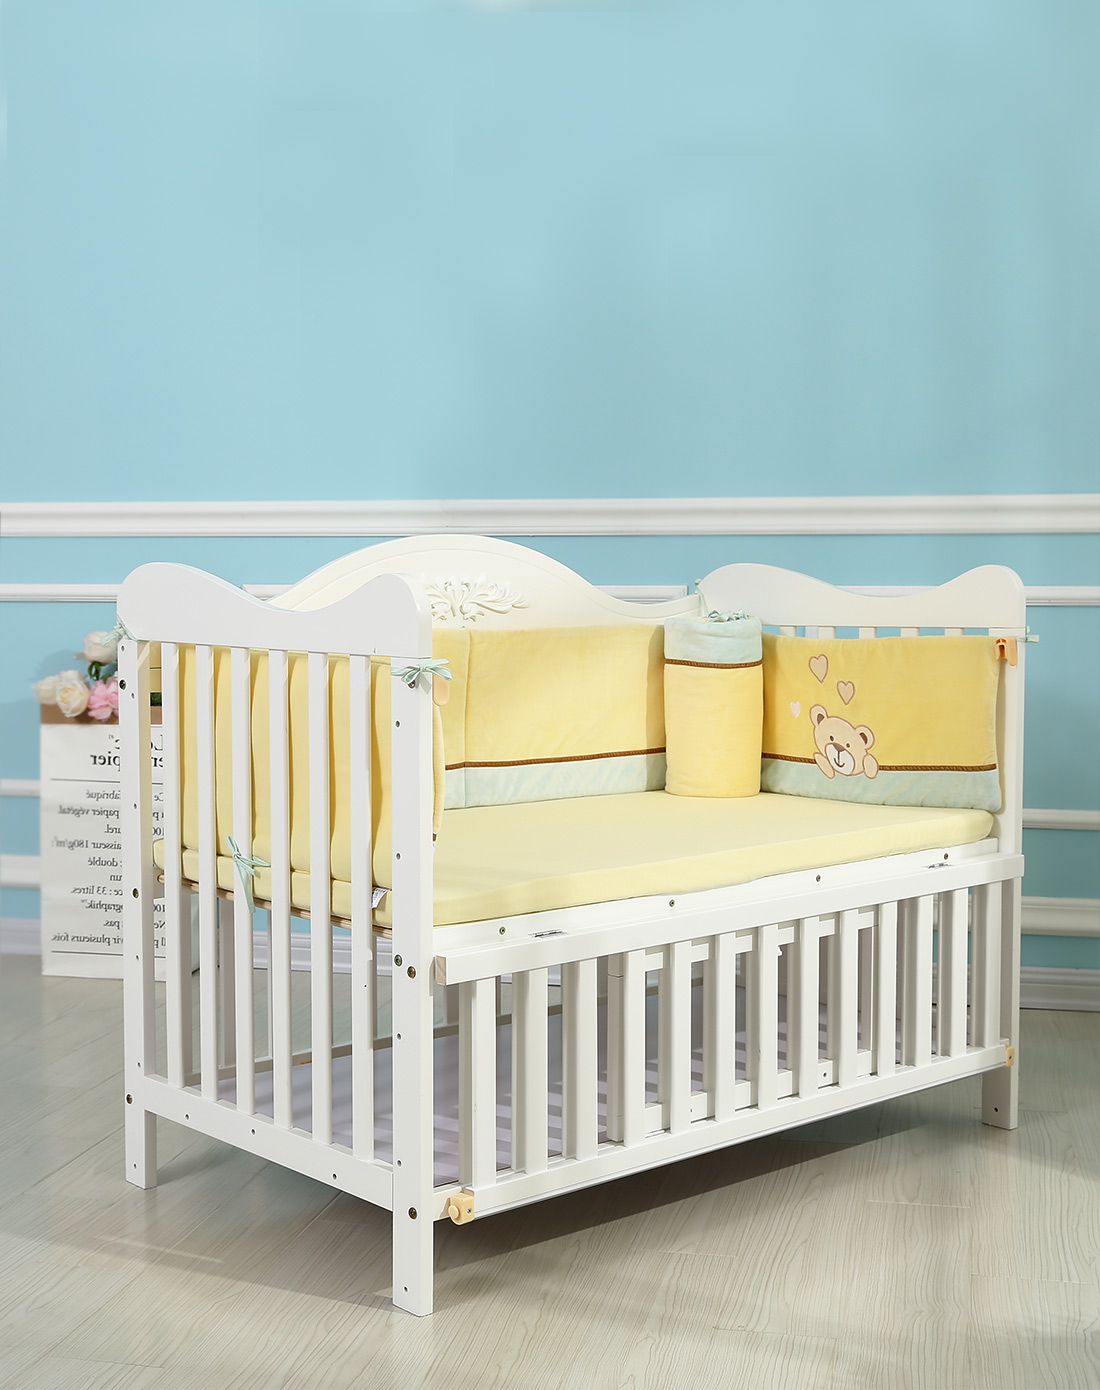 霖贝儿(linbebe)至尊系列多功能婴儿床欧式高档bb床可拼接大床游戏床